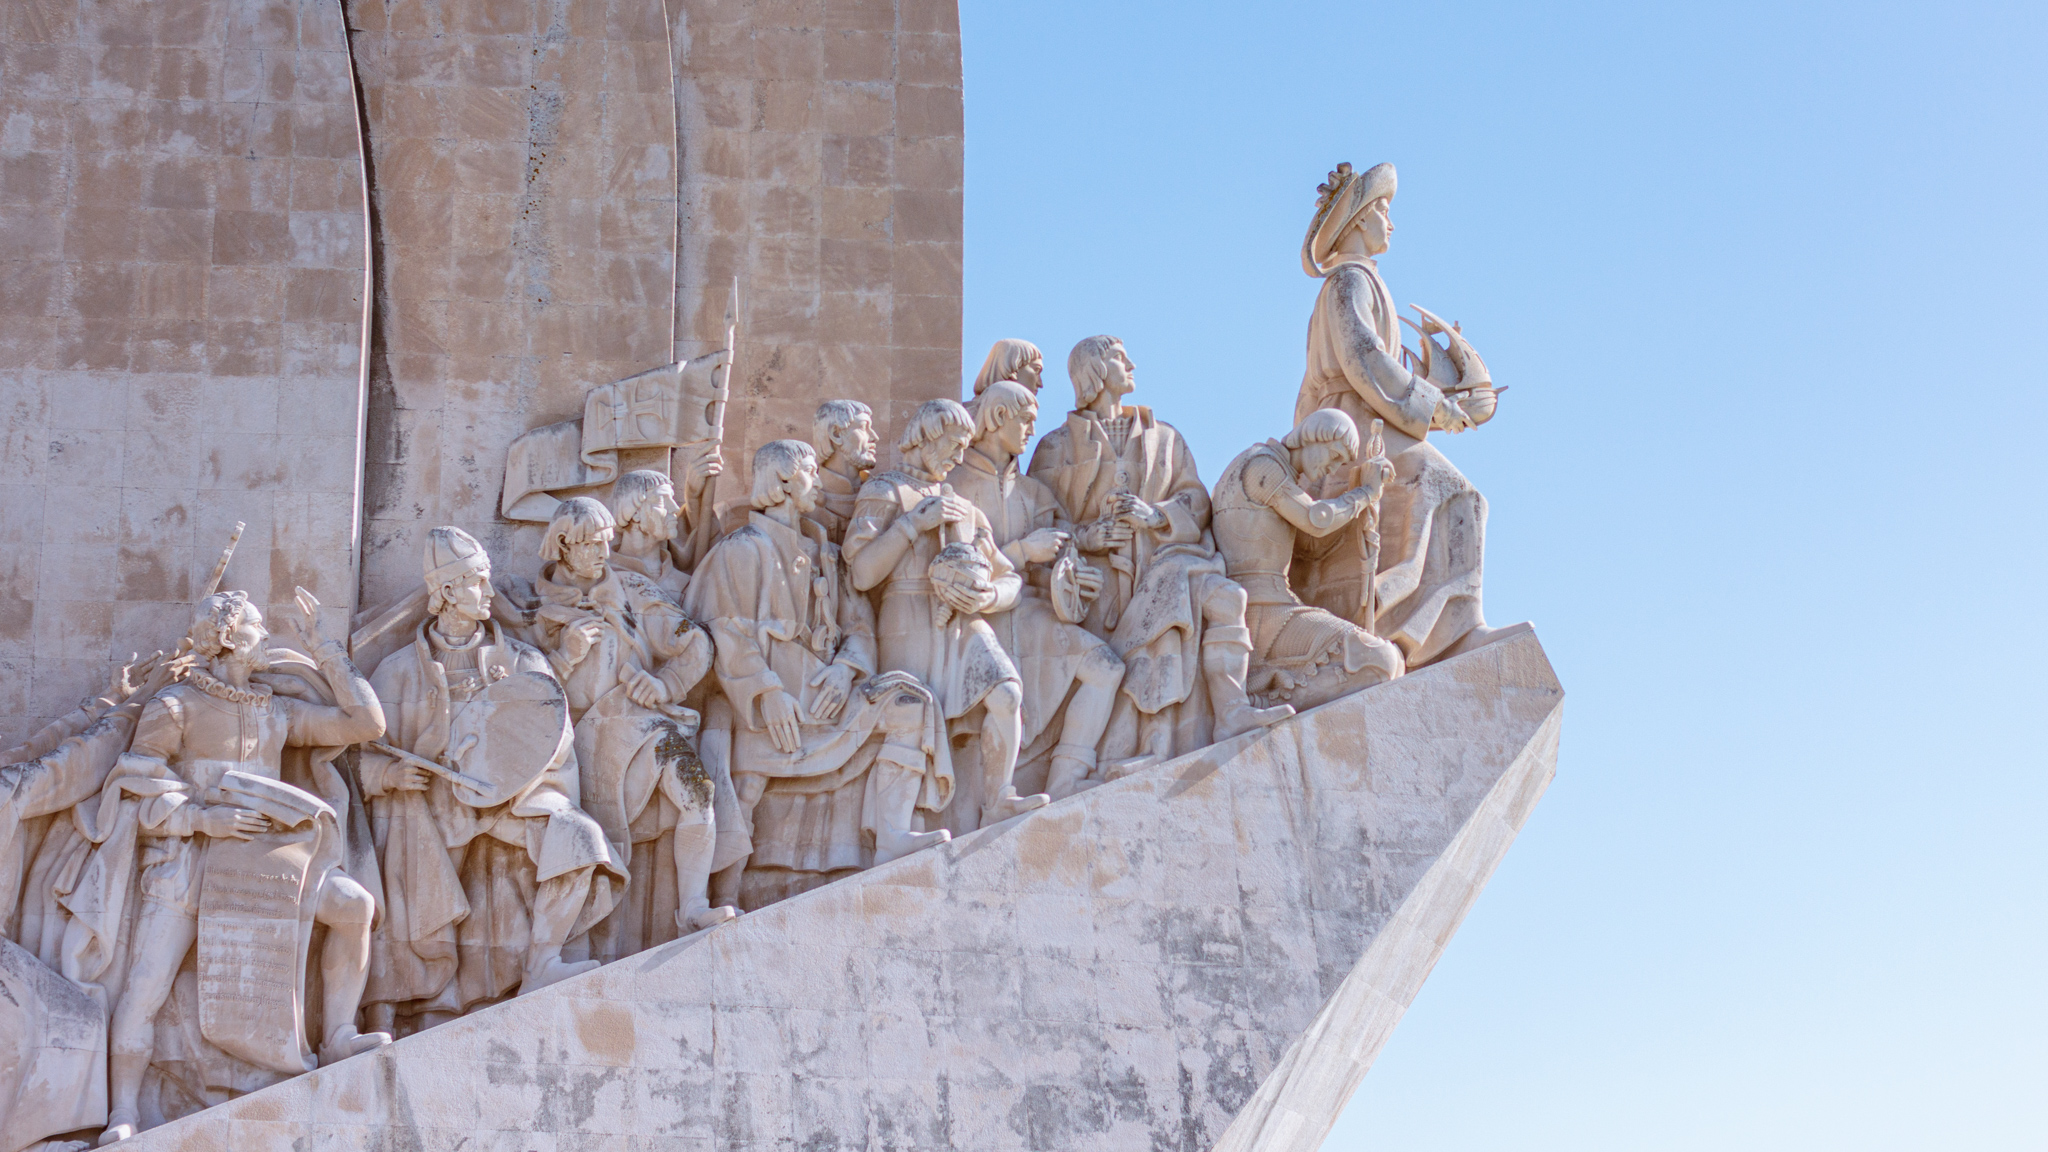 Westliche Ansicht des Denkmals der Entdeckungen, dass verschiedene wichtige Persönlichkeiten Portugals zeigt